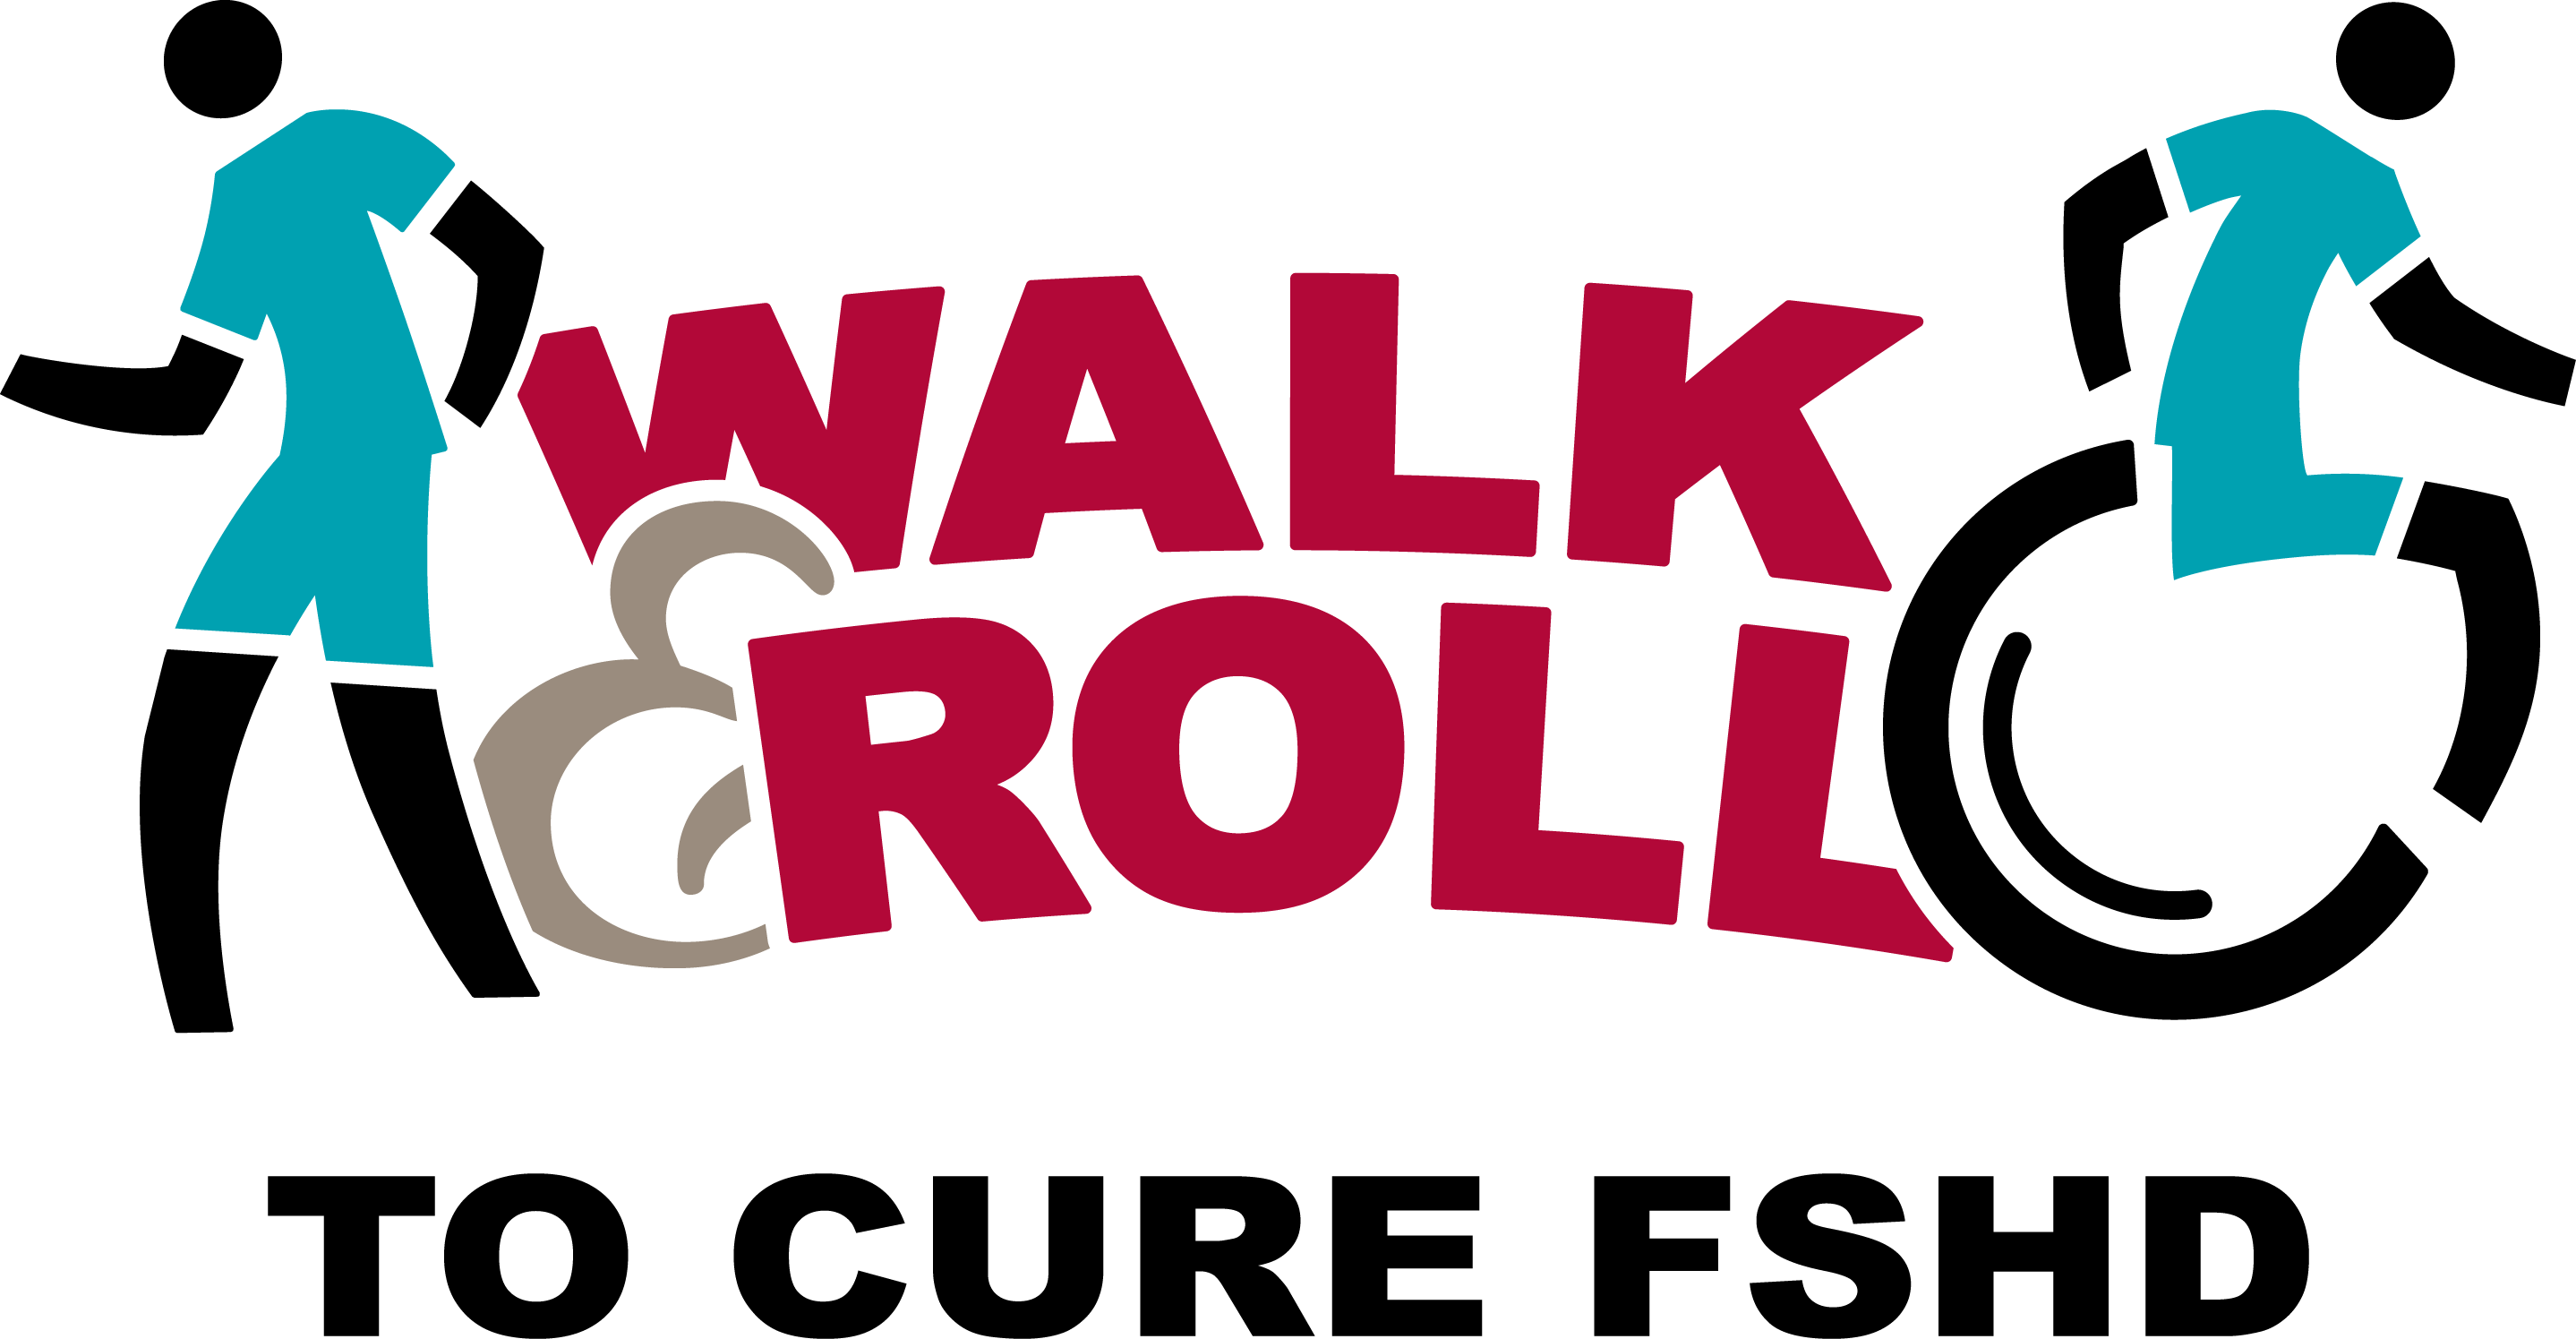 Walk & Roll logo